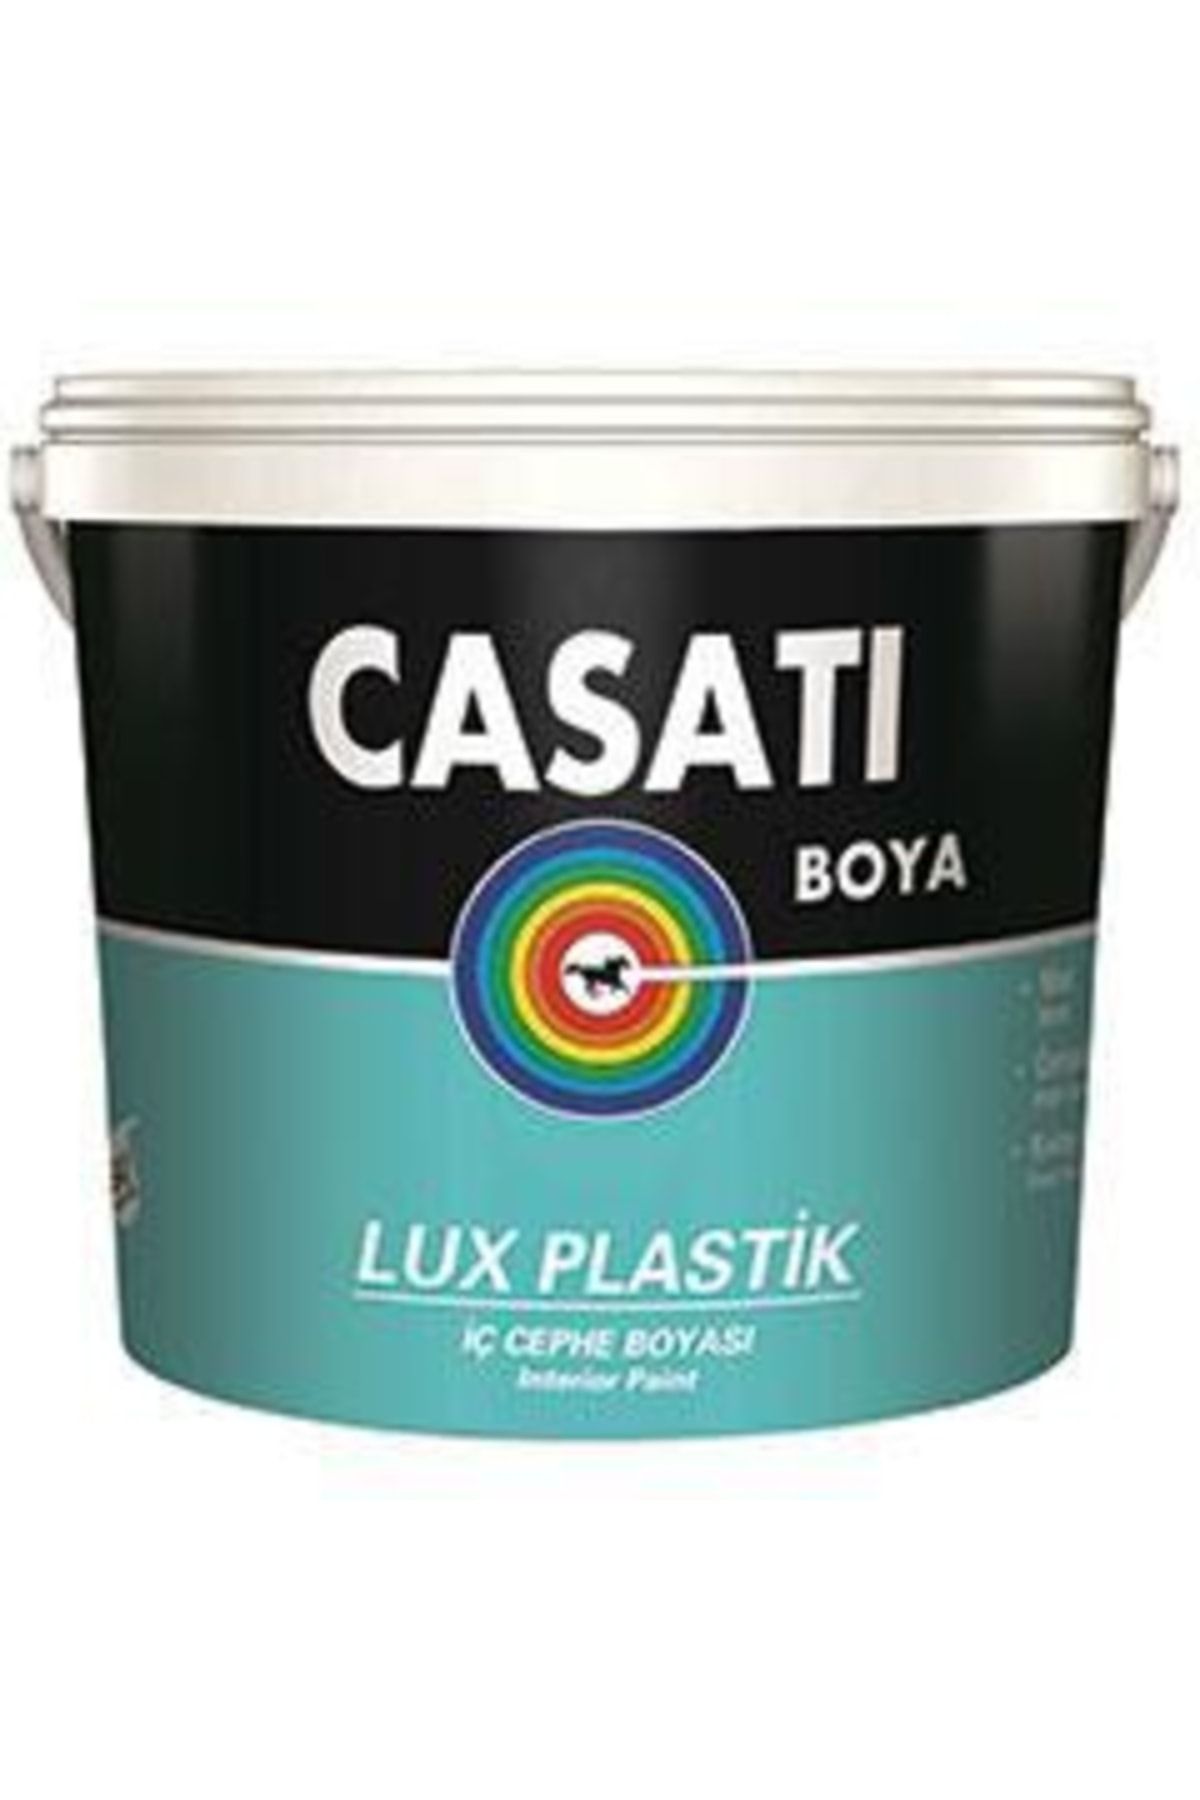 Casati Dyo Lux Plastik Iç Cephe Boyası 10 Kg